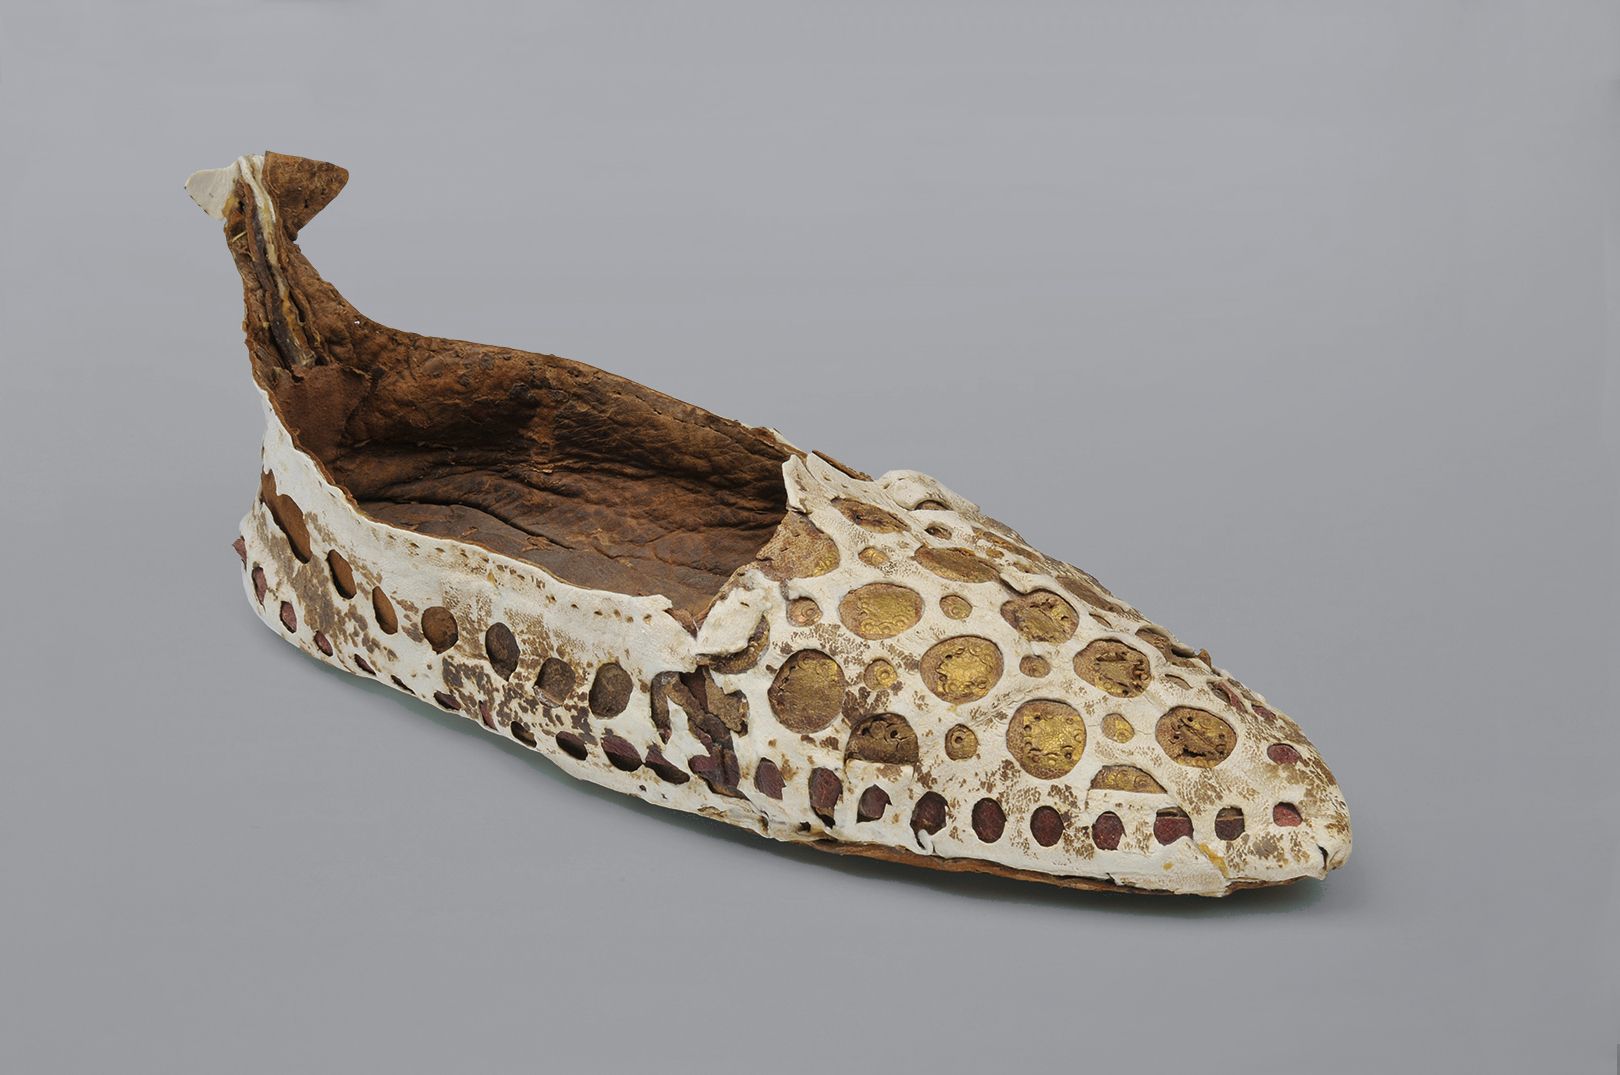 Koptischer Schuh, Ägypten, 4. Jh. © DLM, C. Perl-Appl